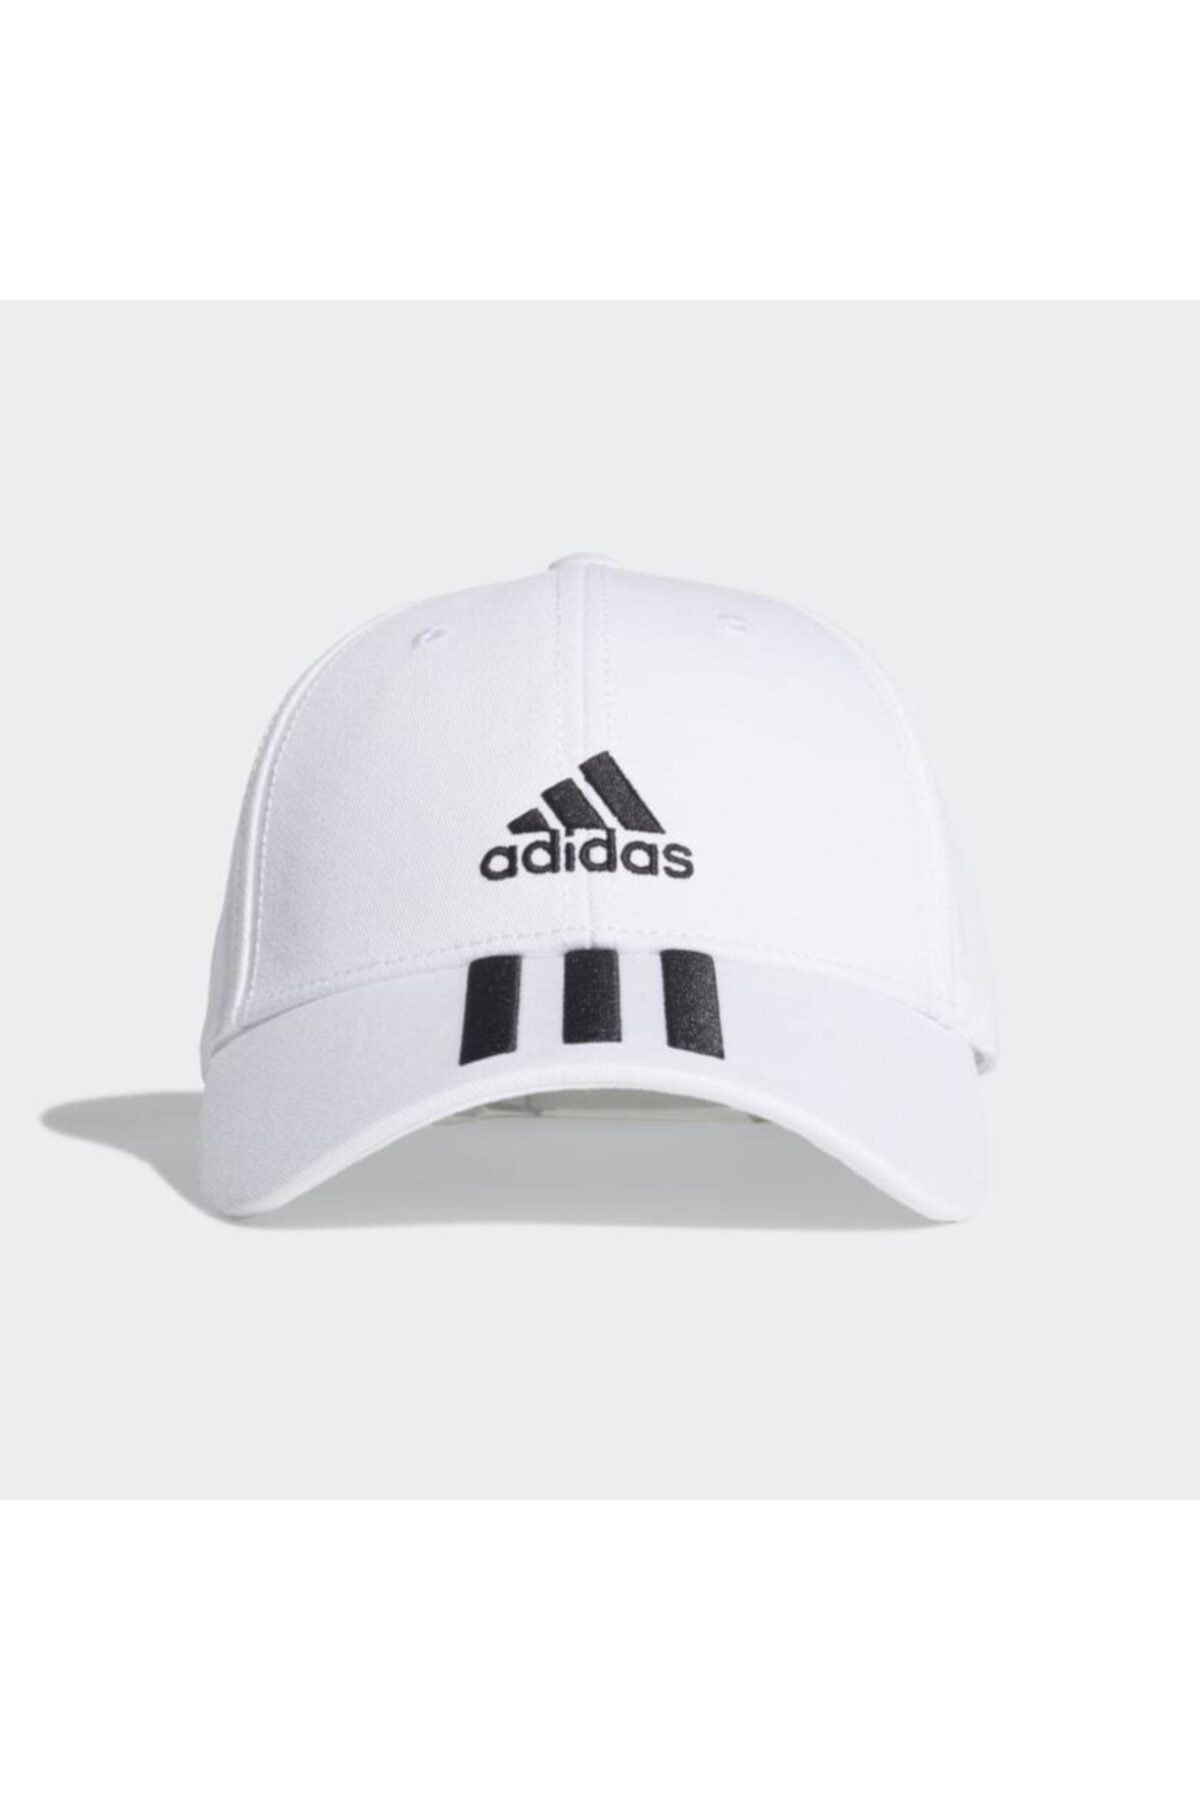 adidas 3-stripes Twill Beyaz Beyzbol Şapkası (fq5411)